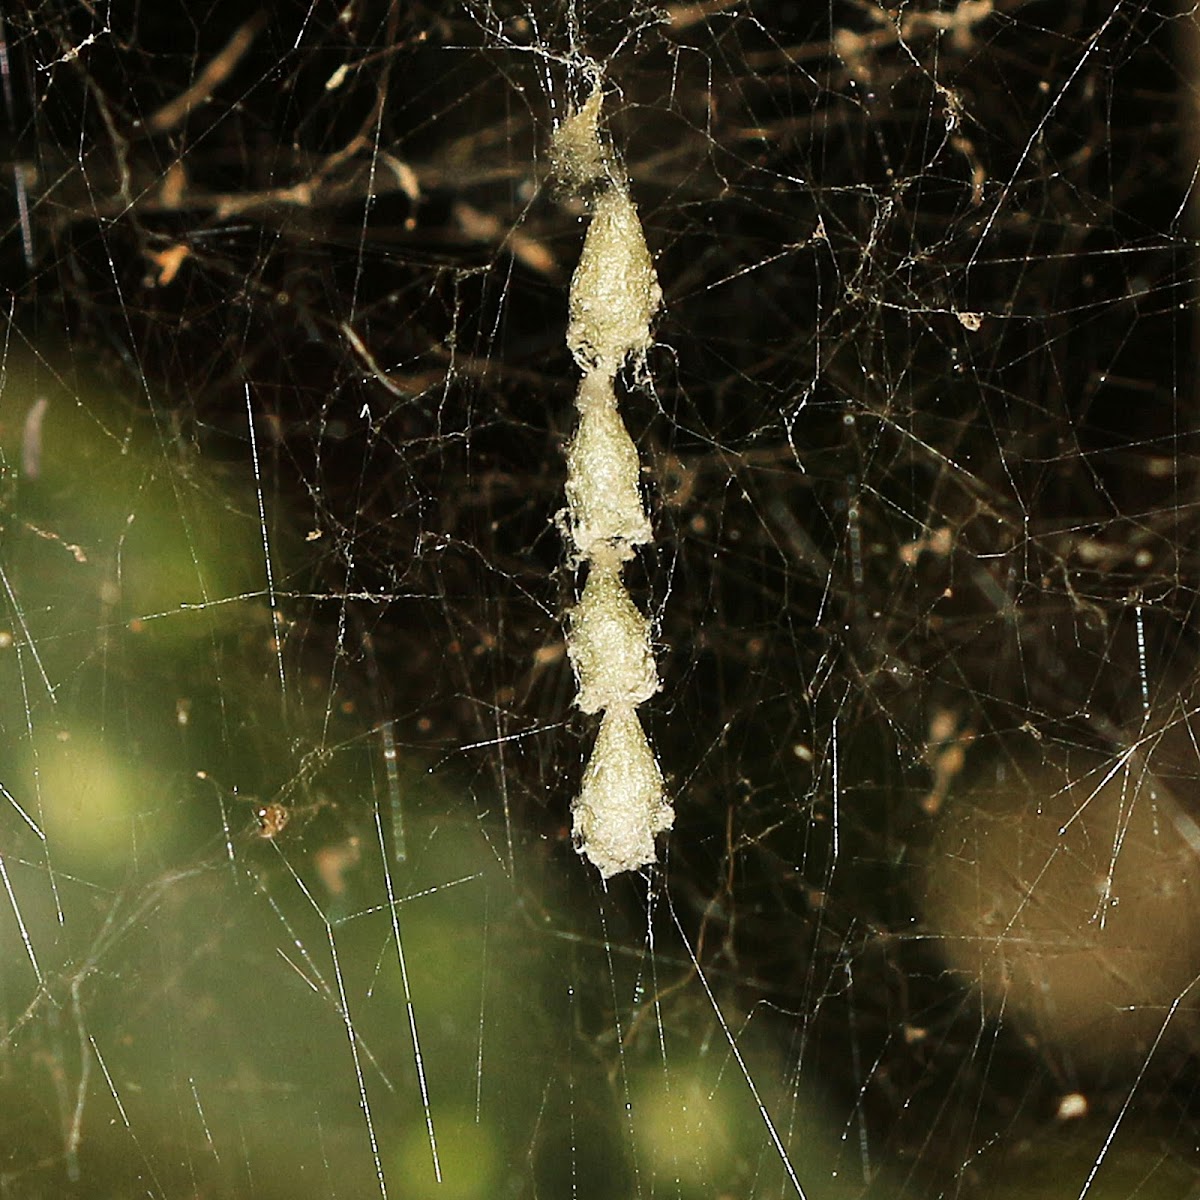 Dome Spider